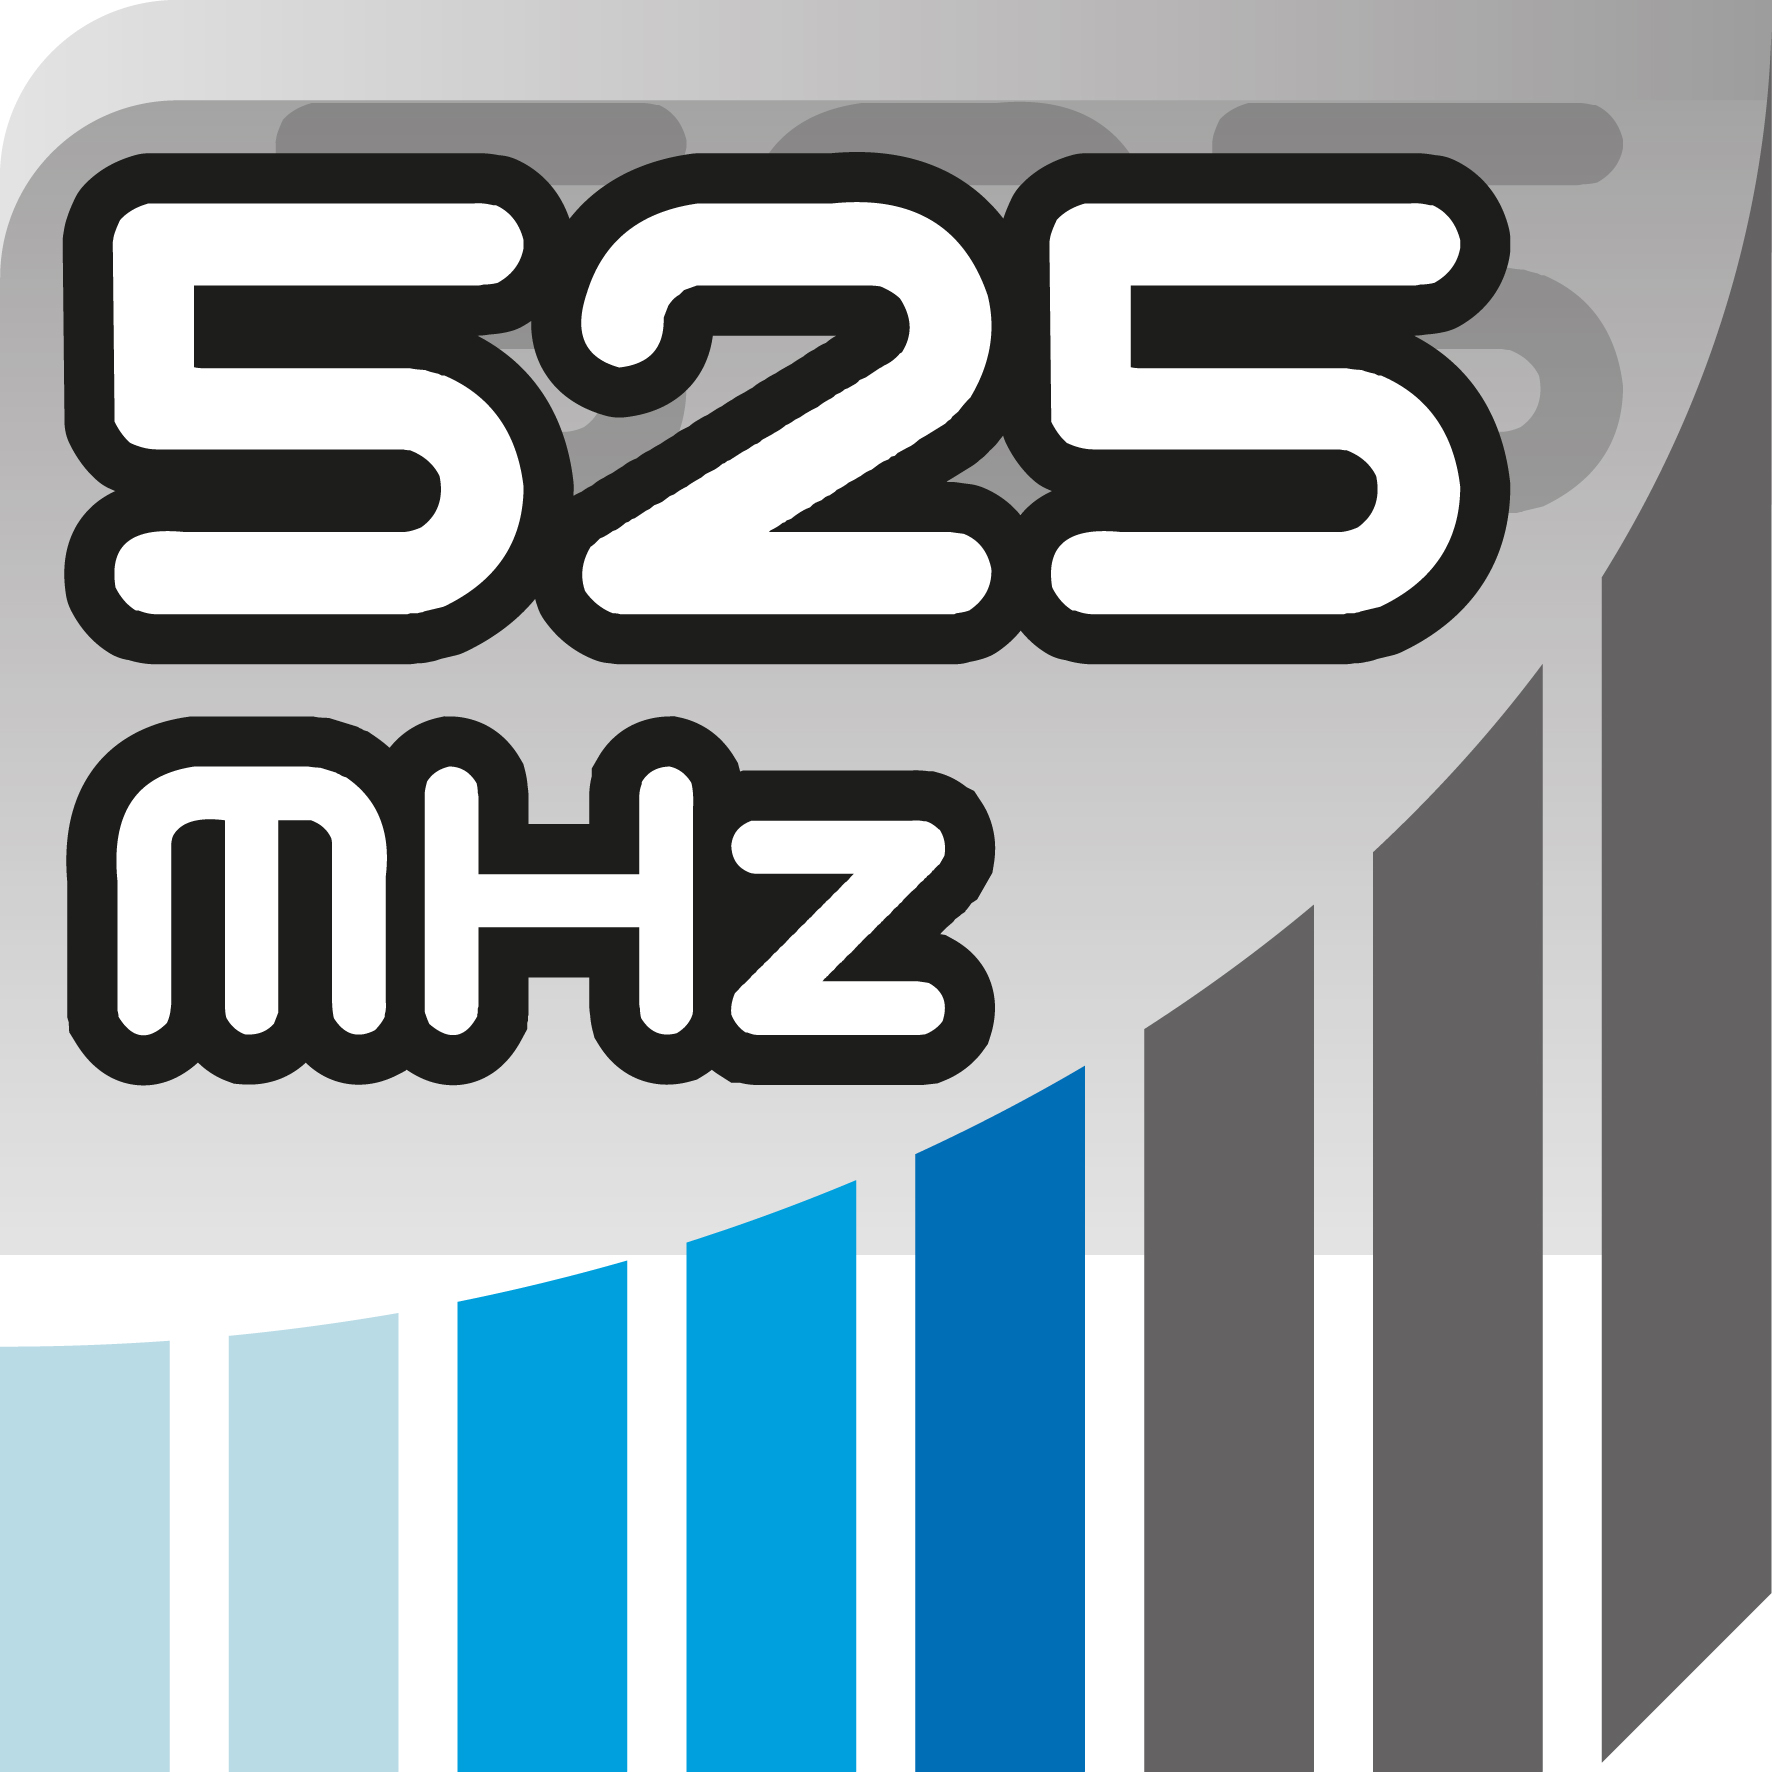 525 MHz